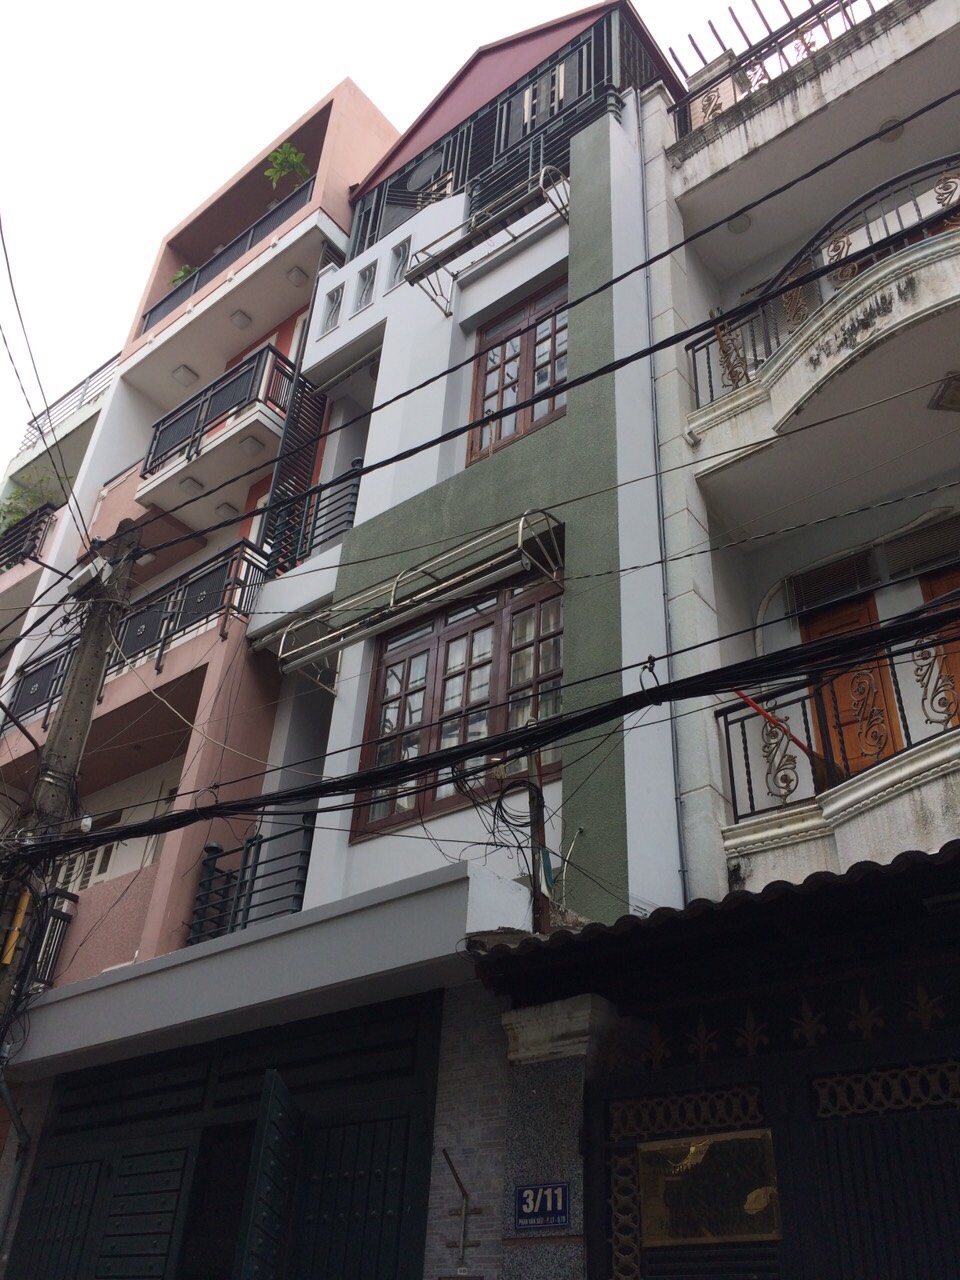 Bán nhà riêng tại đường Xuân Diệu, P. 4, Tân Bình, 4 * 13m, 2 lầu, 7.4 tỷ